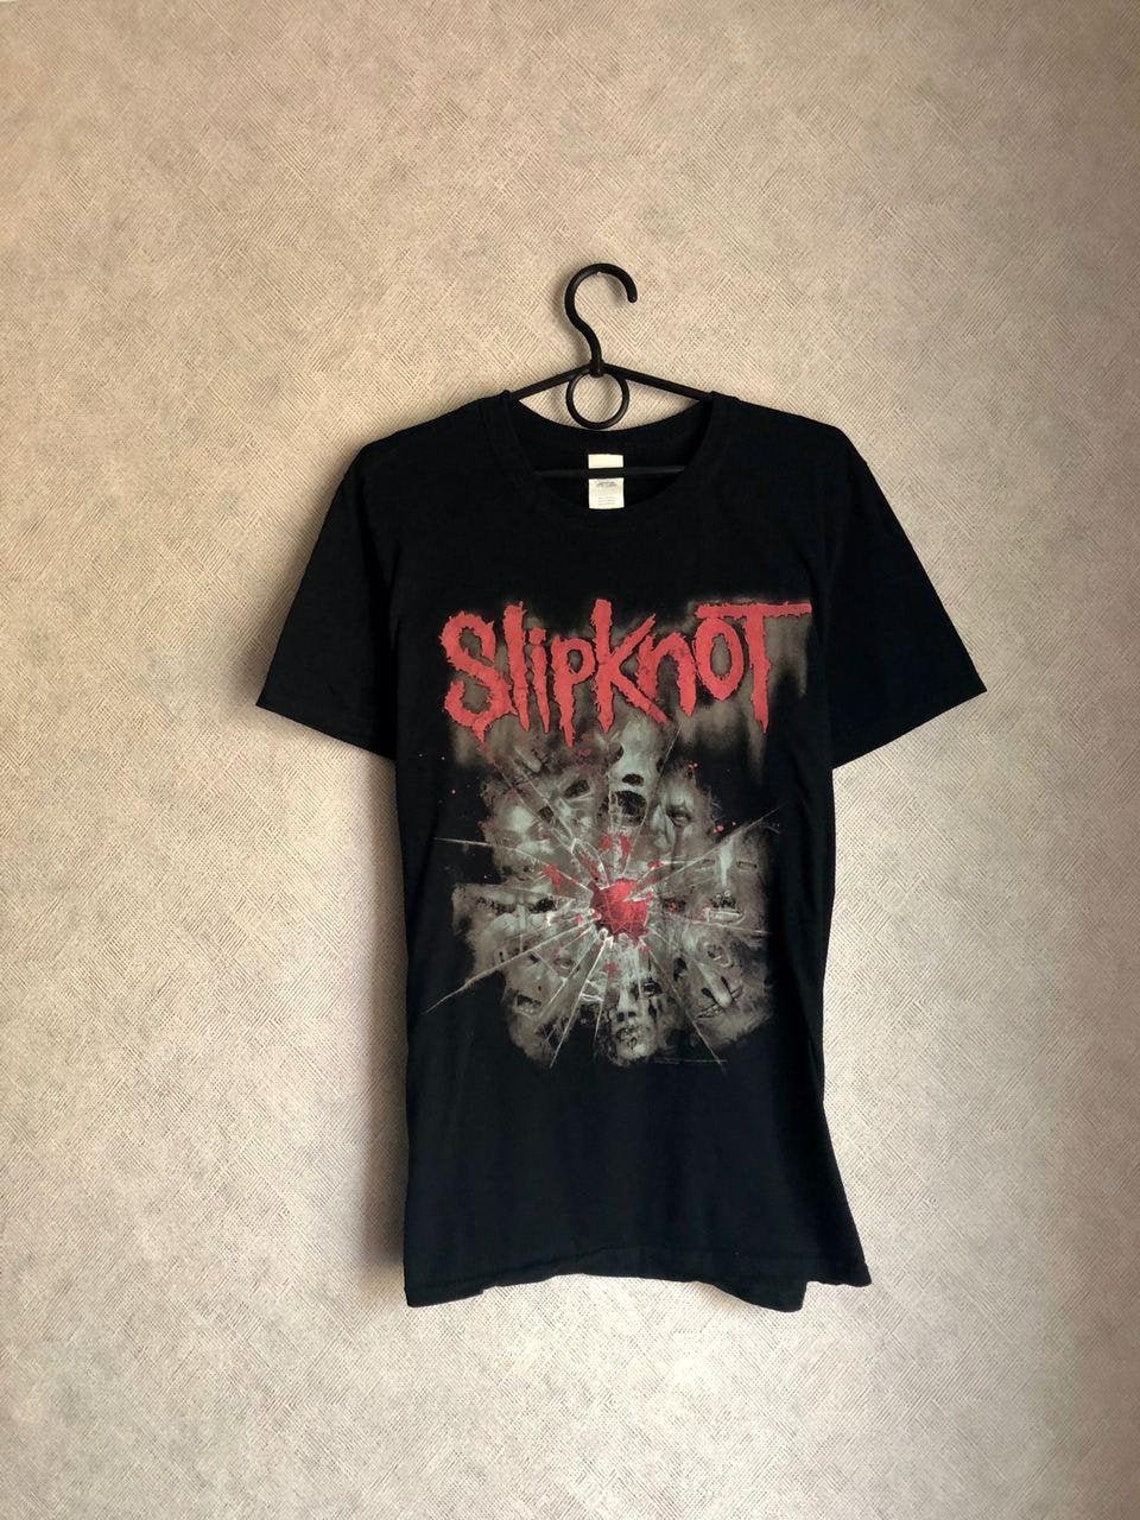 Slipknot vintage shirt 2012 vintage | Etsy